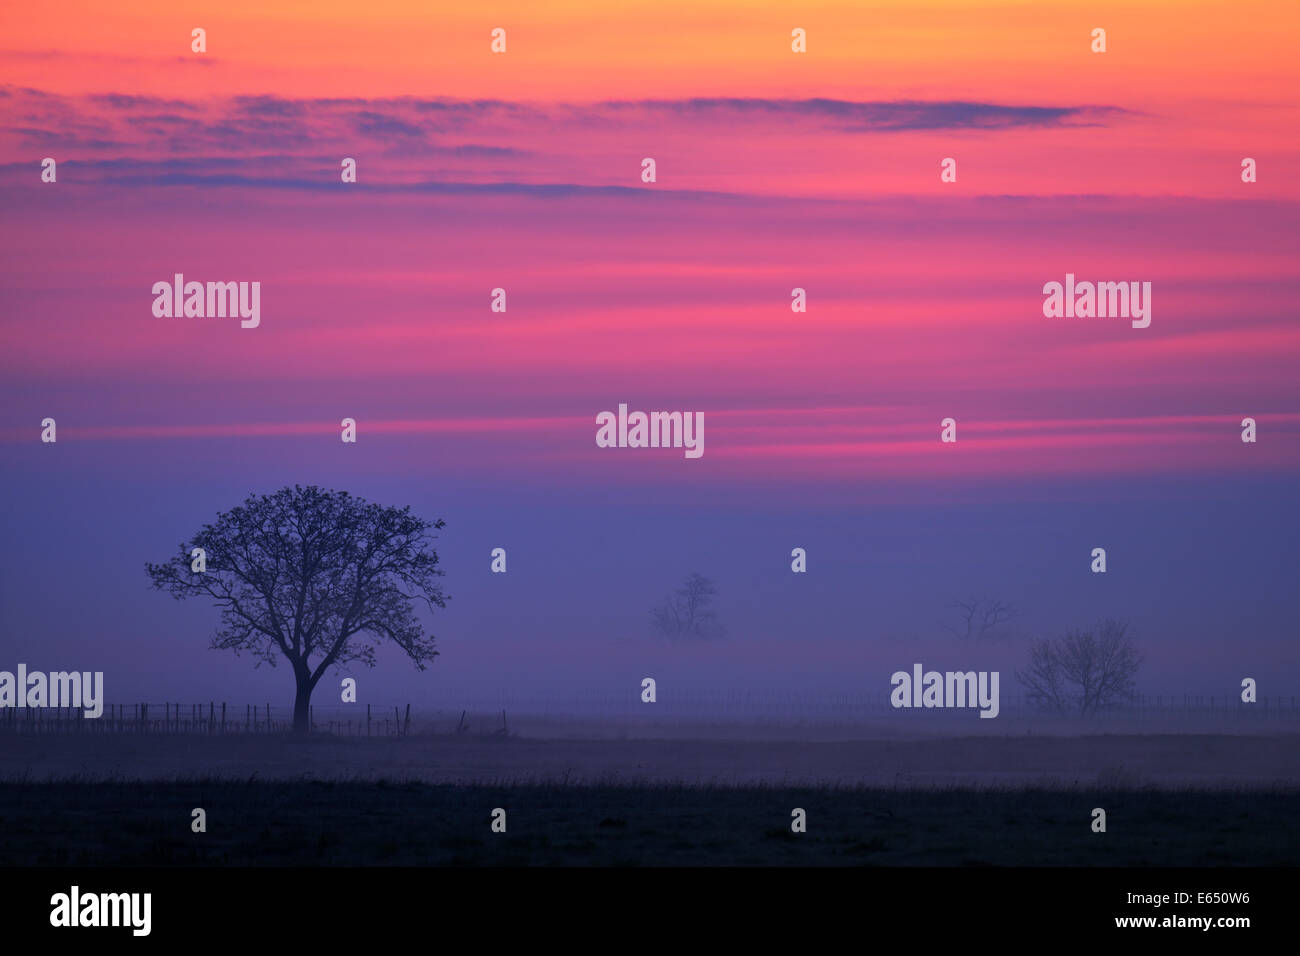 Baum im Nebel, sunset glow, Apetlon, Burgenland, Österreich Stockfoto